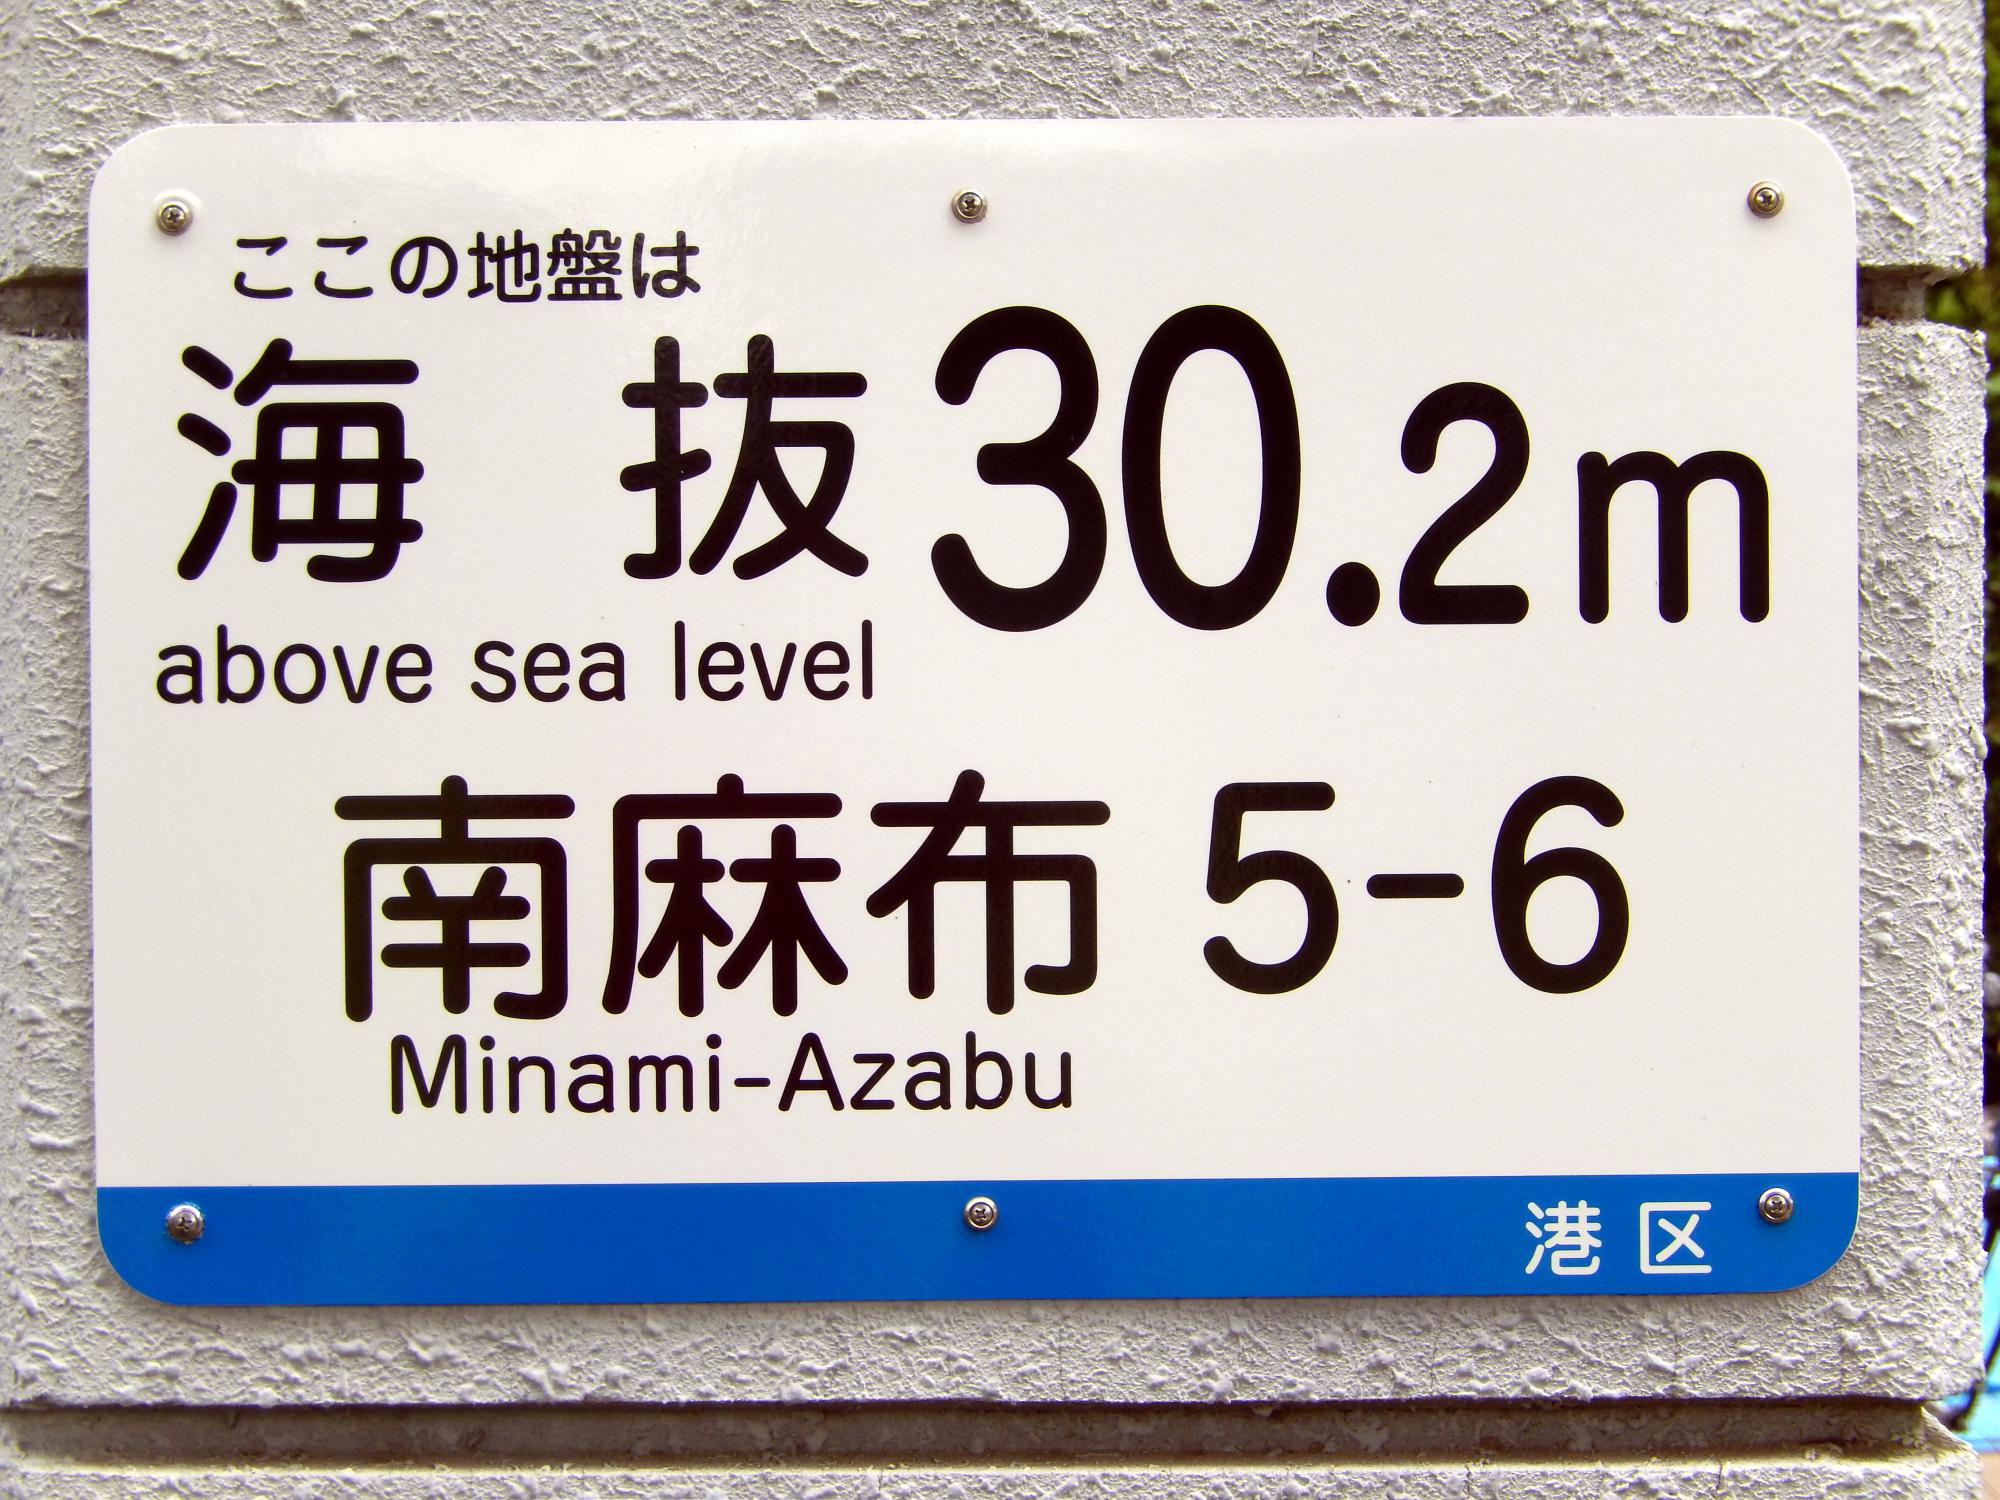 Signs Of Japan - Minami Azabu